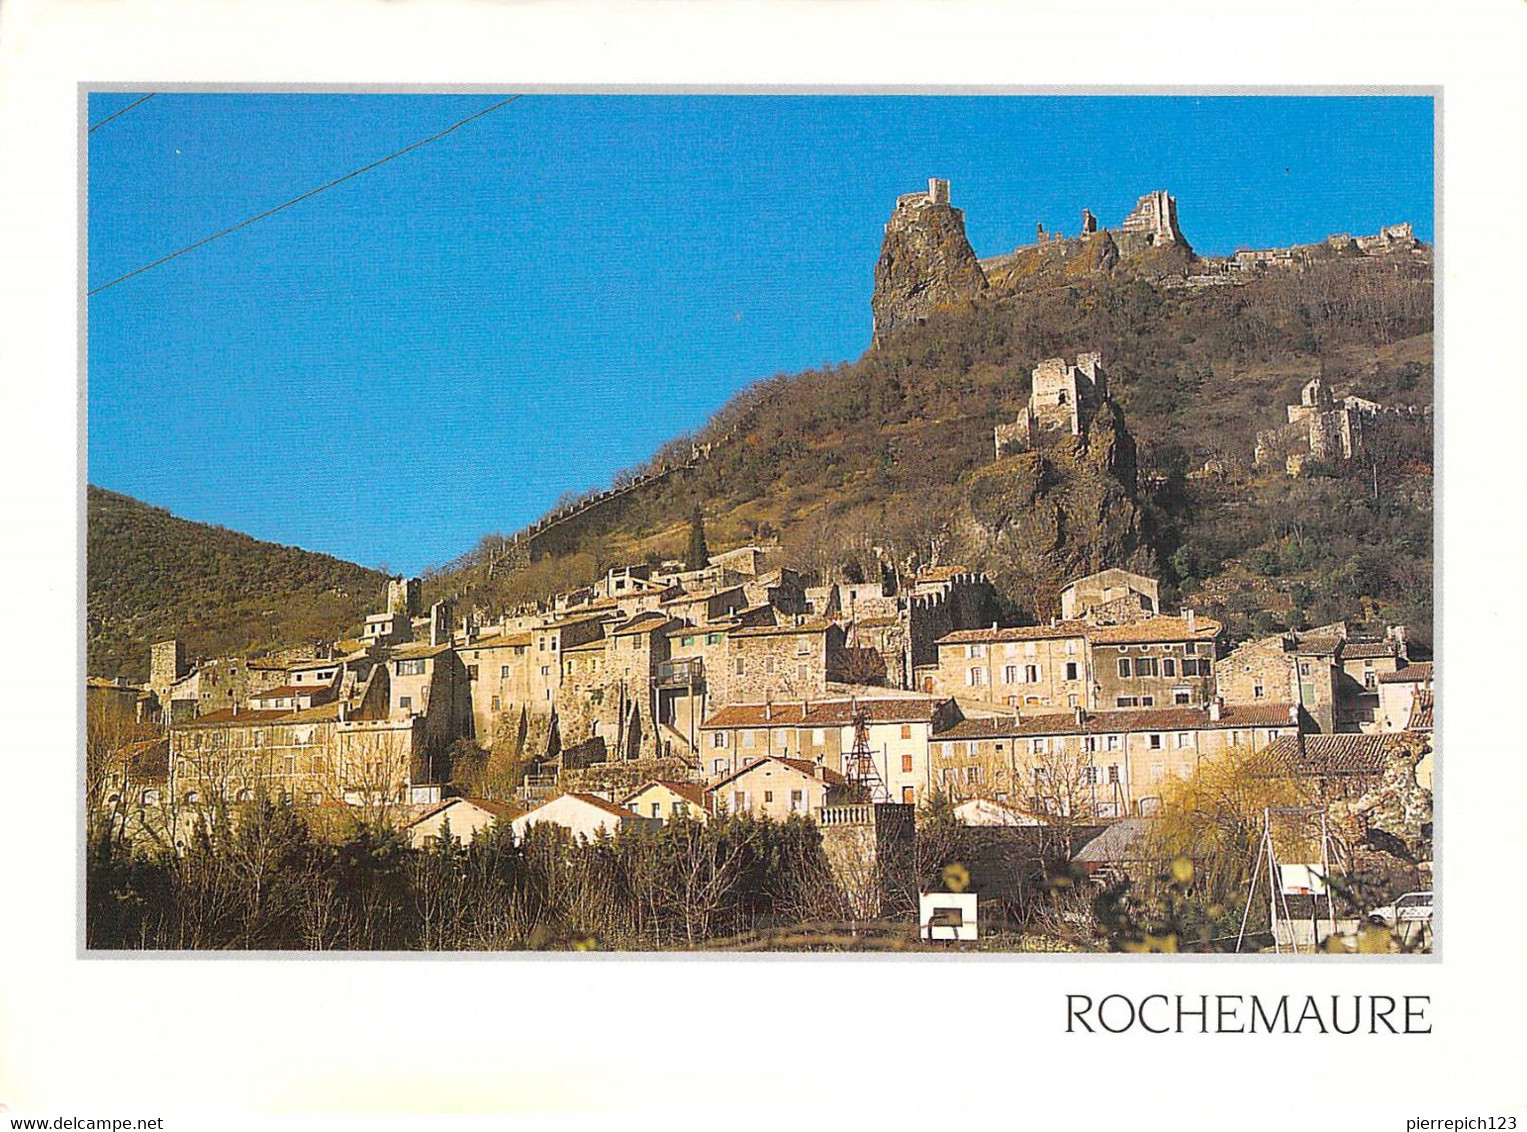 07 - Rochemaure - Le Village Et Le Château - Rochemaure